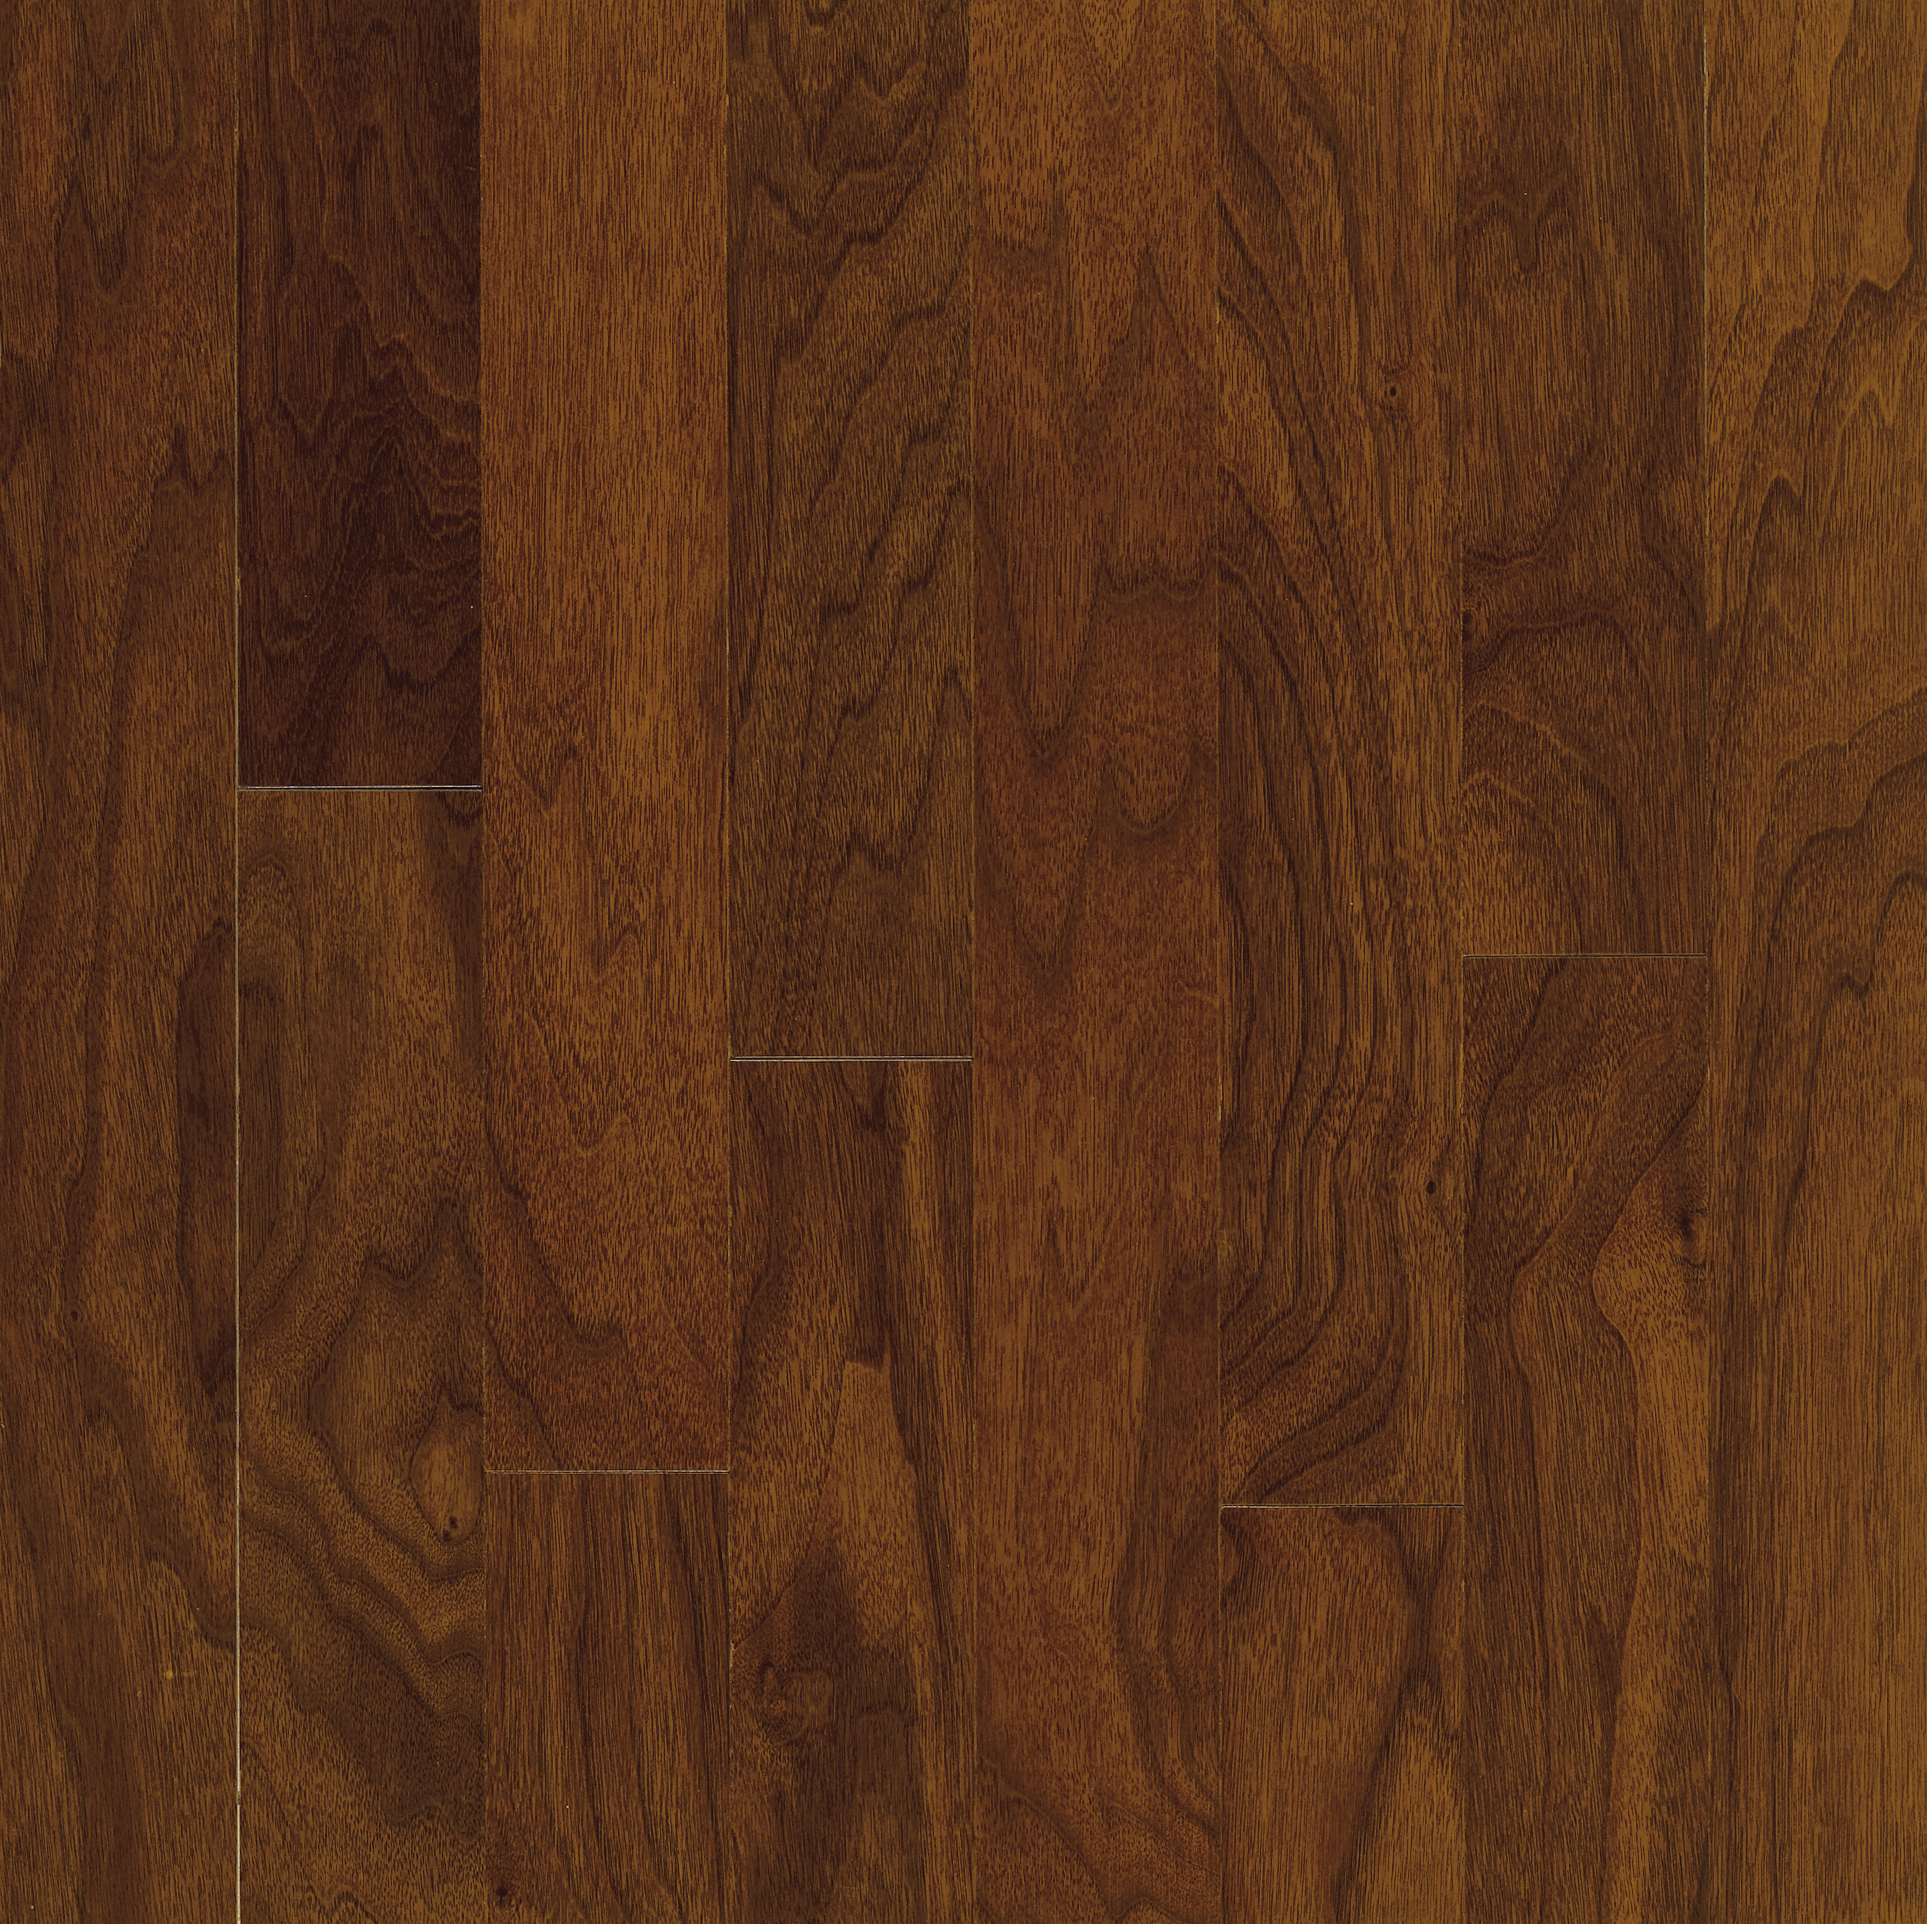 Walnut Engineered Hardwood E3338ee, How To Care For Bruce Engineered Hardwood Floors